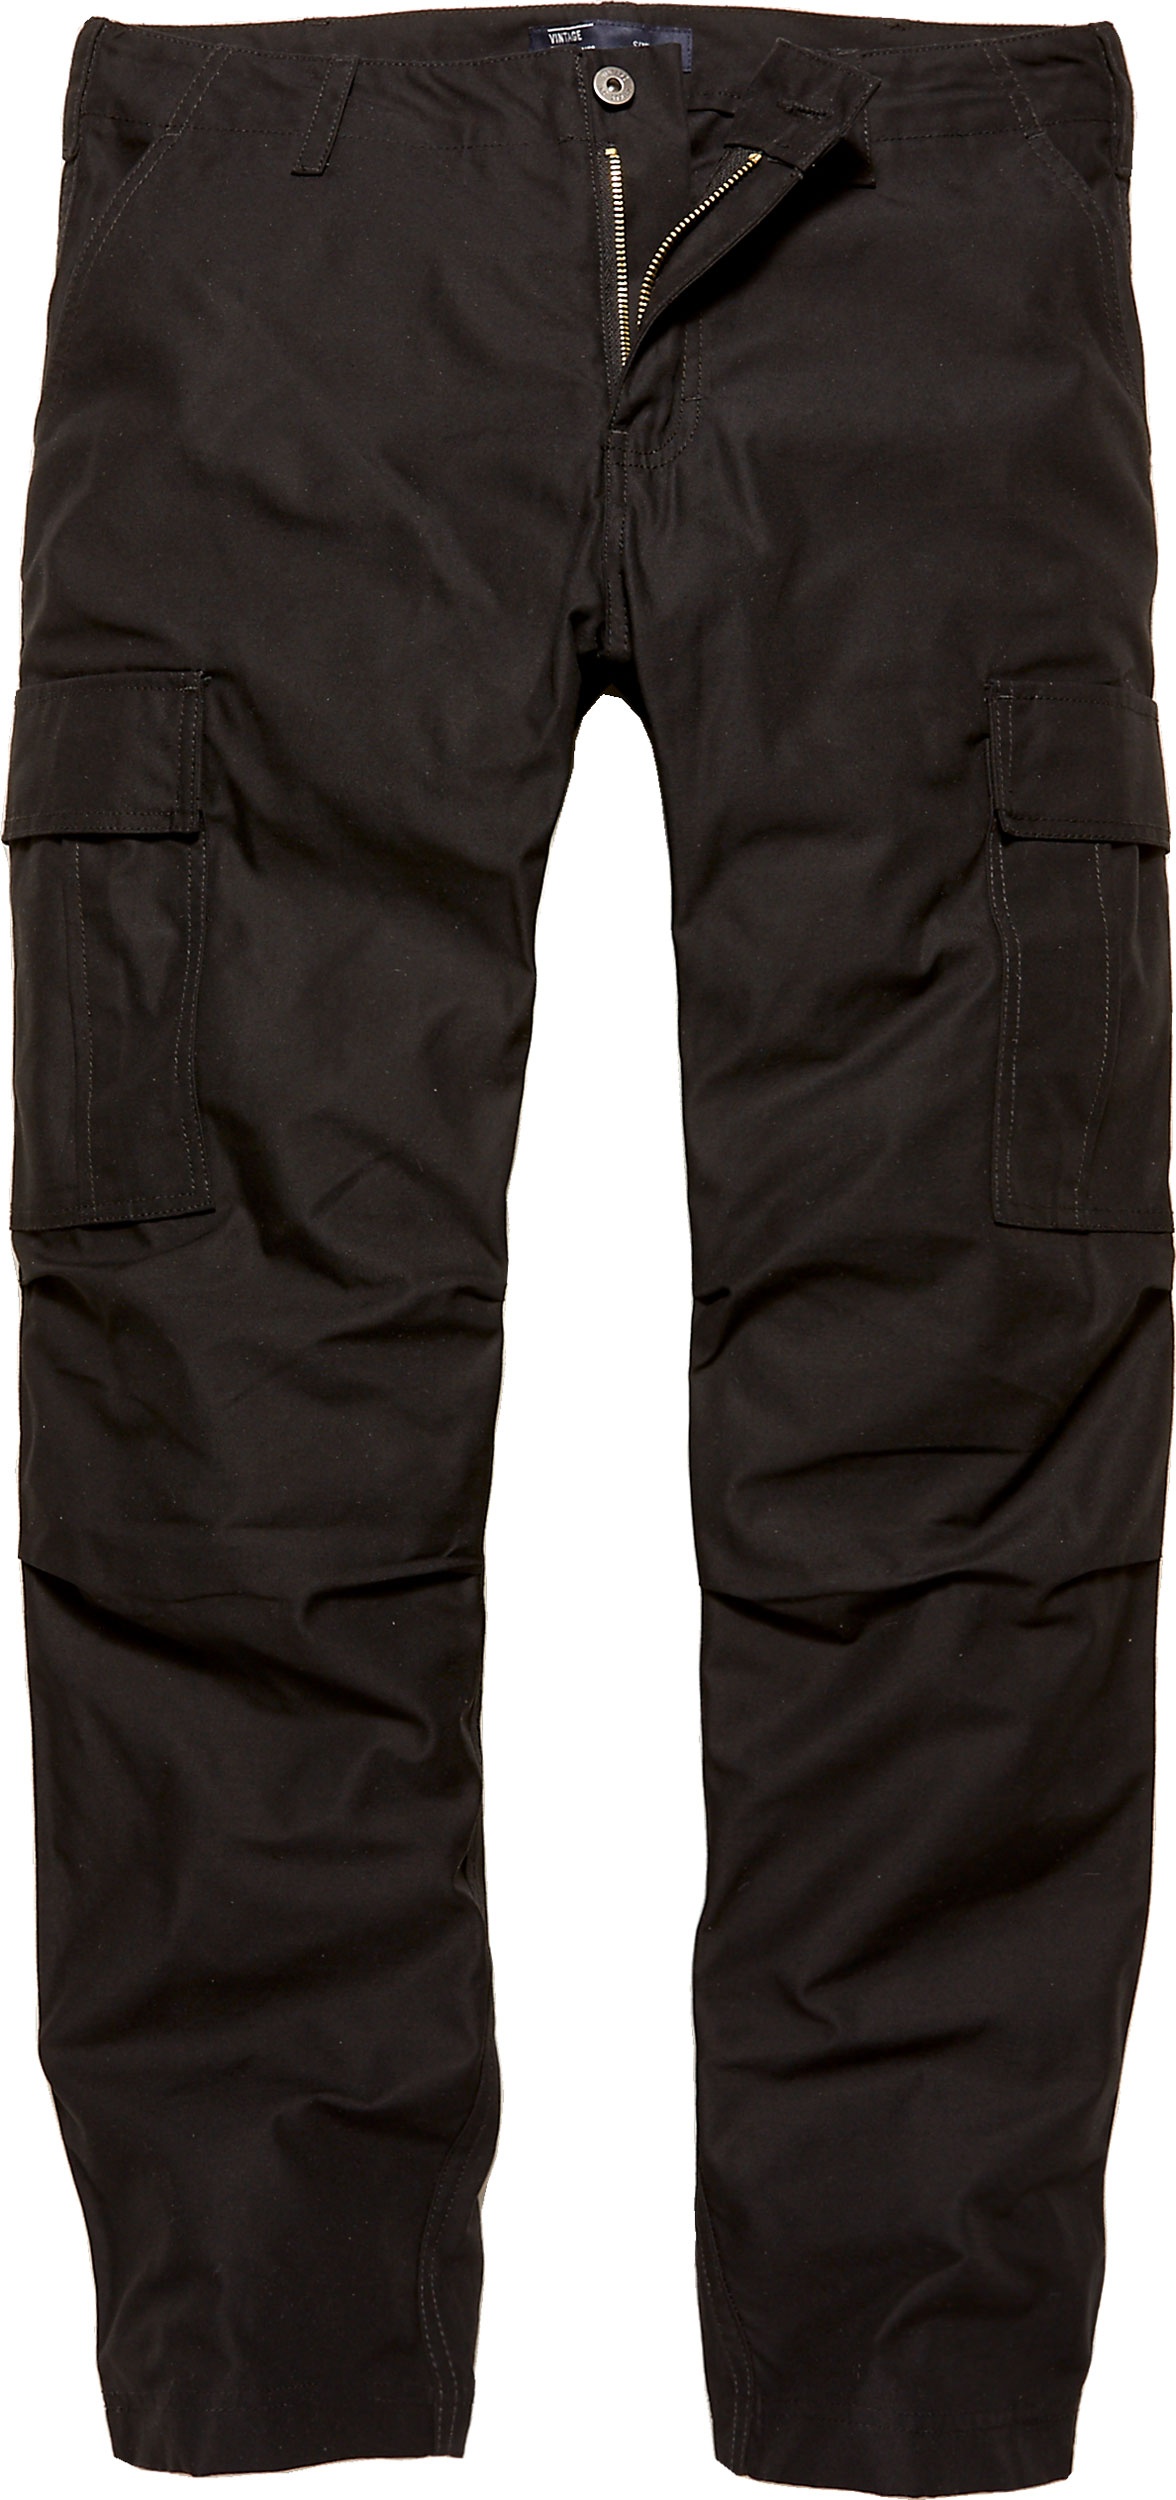 Vintage Industries Owen, pantalon cargo - Noir - XXL